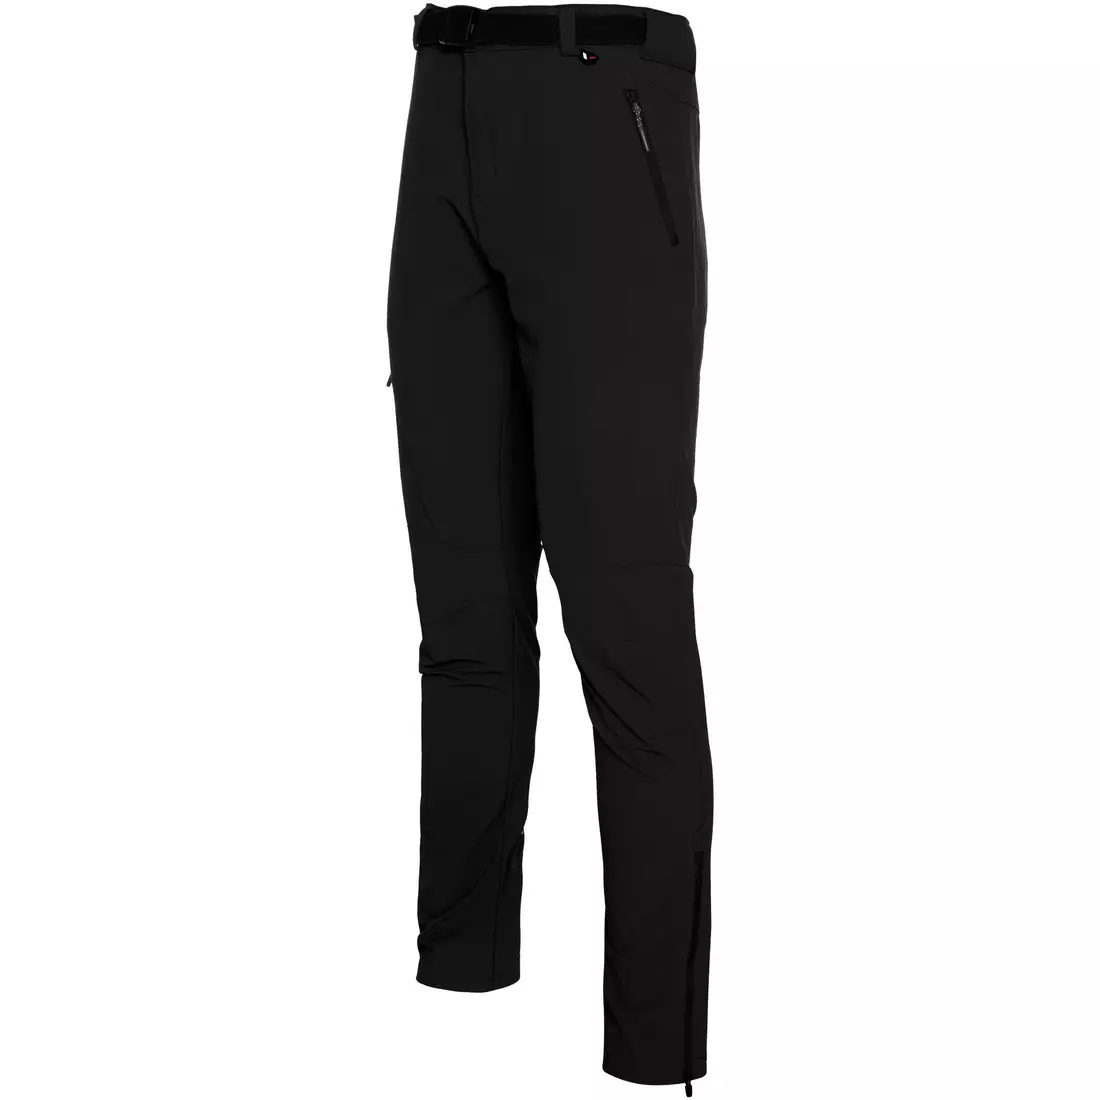 VIKING Pánské sportovní a trekingové kalhoty, Expander 900/23/2309/09 black